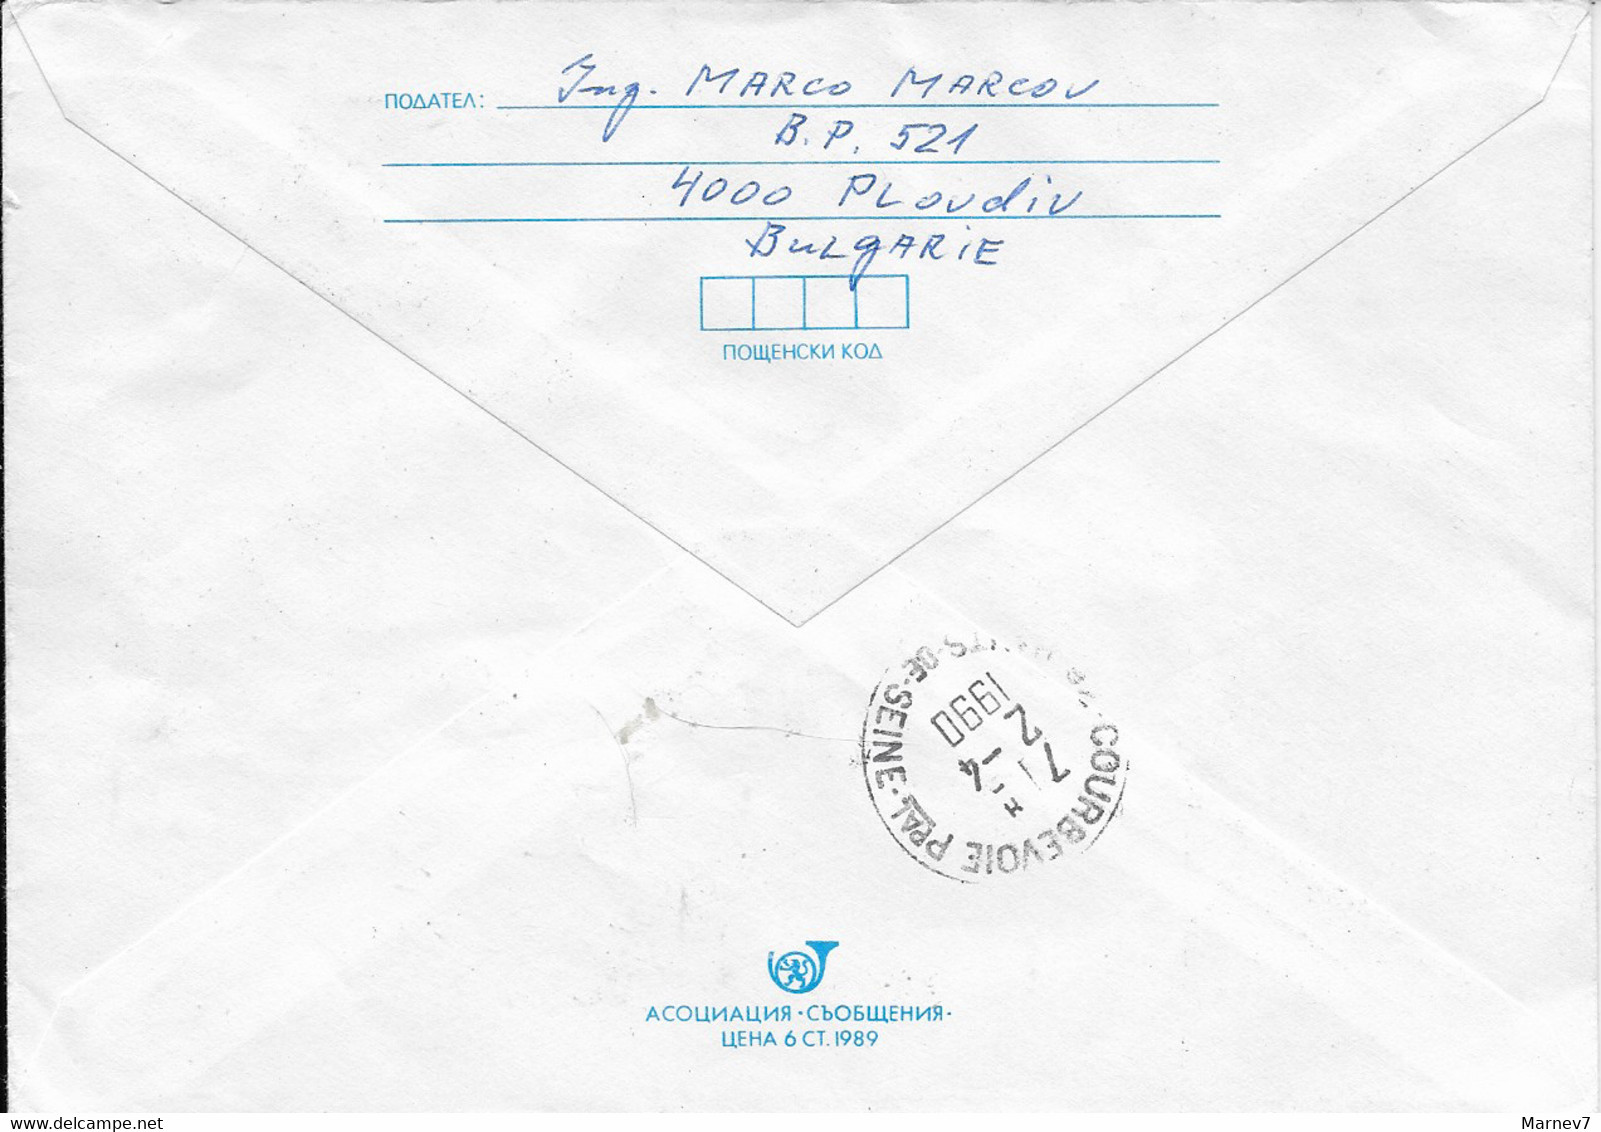 Le Chat - Entier Postal Enveloppe Recommandée N° 450 De Plodiv Bulgarie Du 24 03 90 - Chats - Bulgaria - - Storia Postale